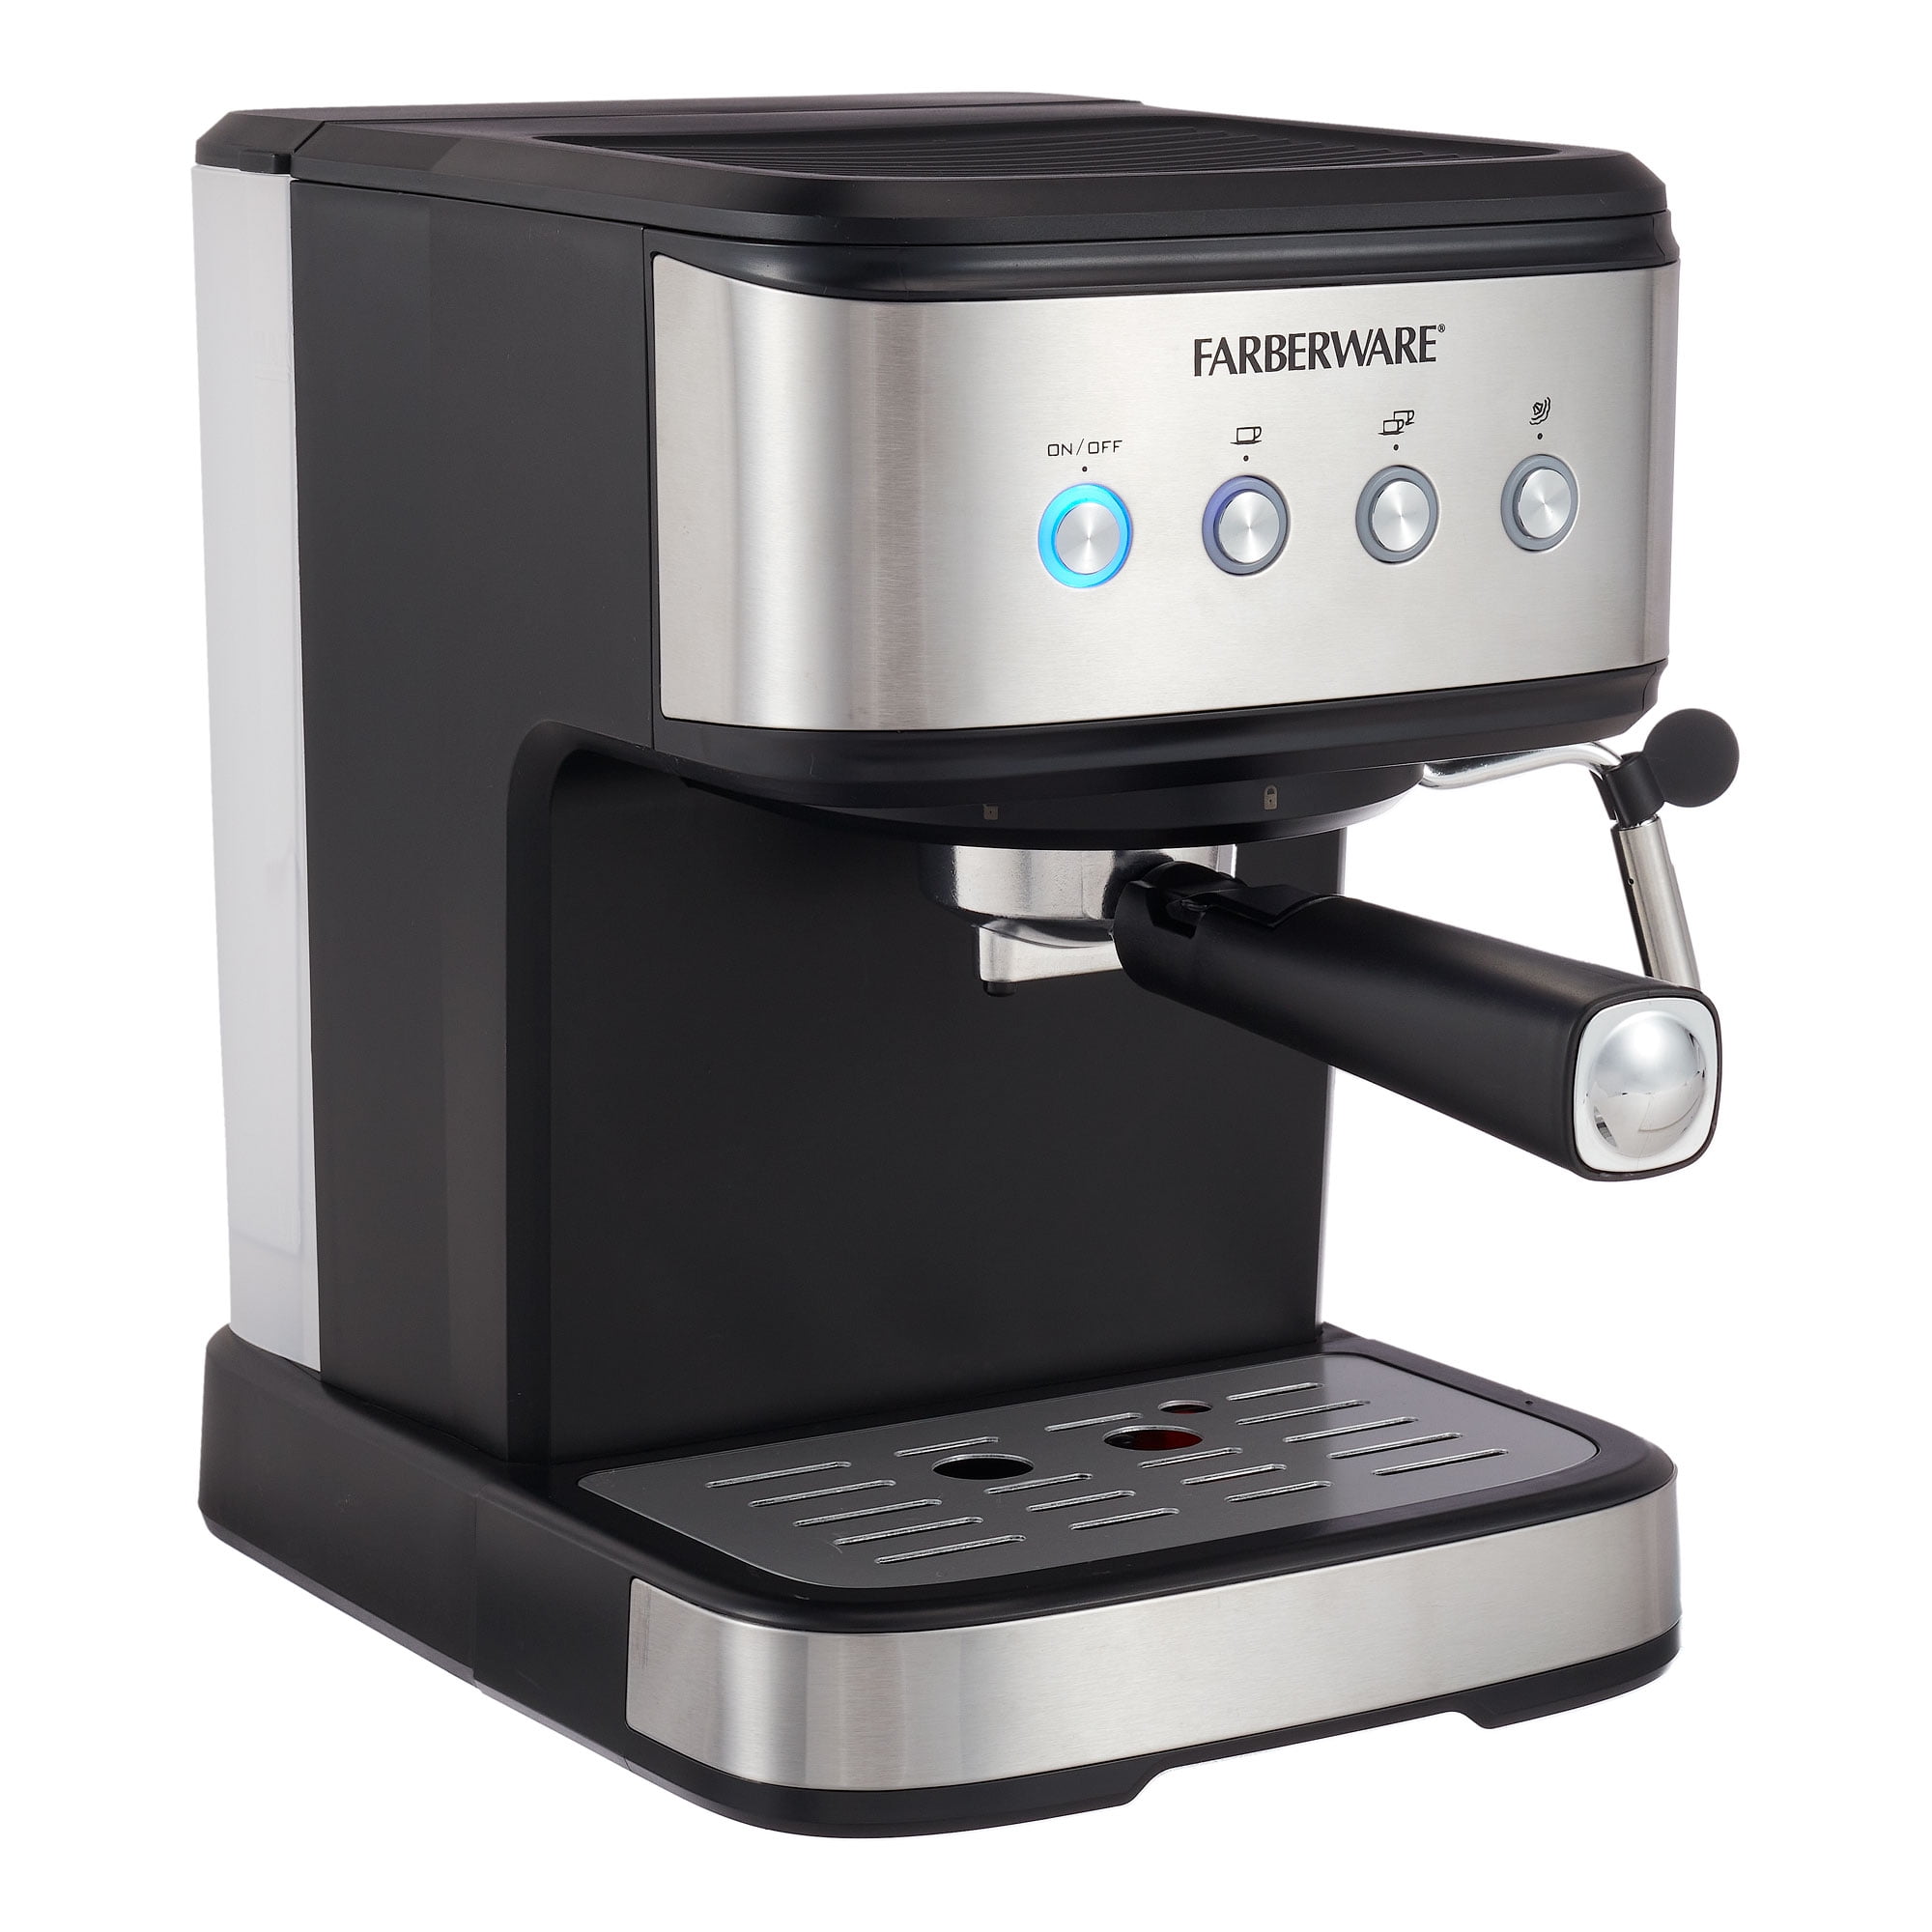 DESCALE VINEGAR FARBERWARE Espresso Maker MILK Frother 28035441